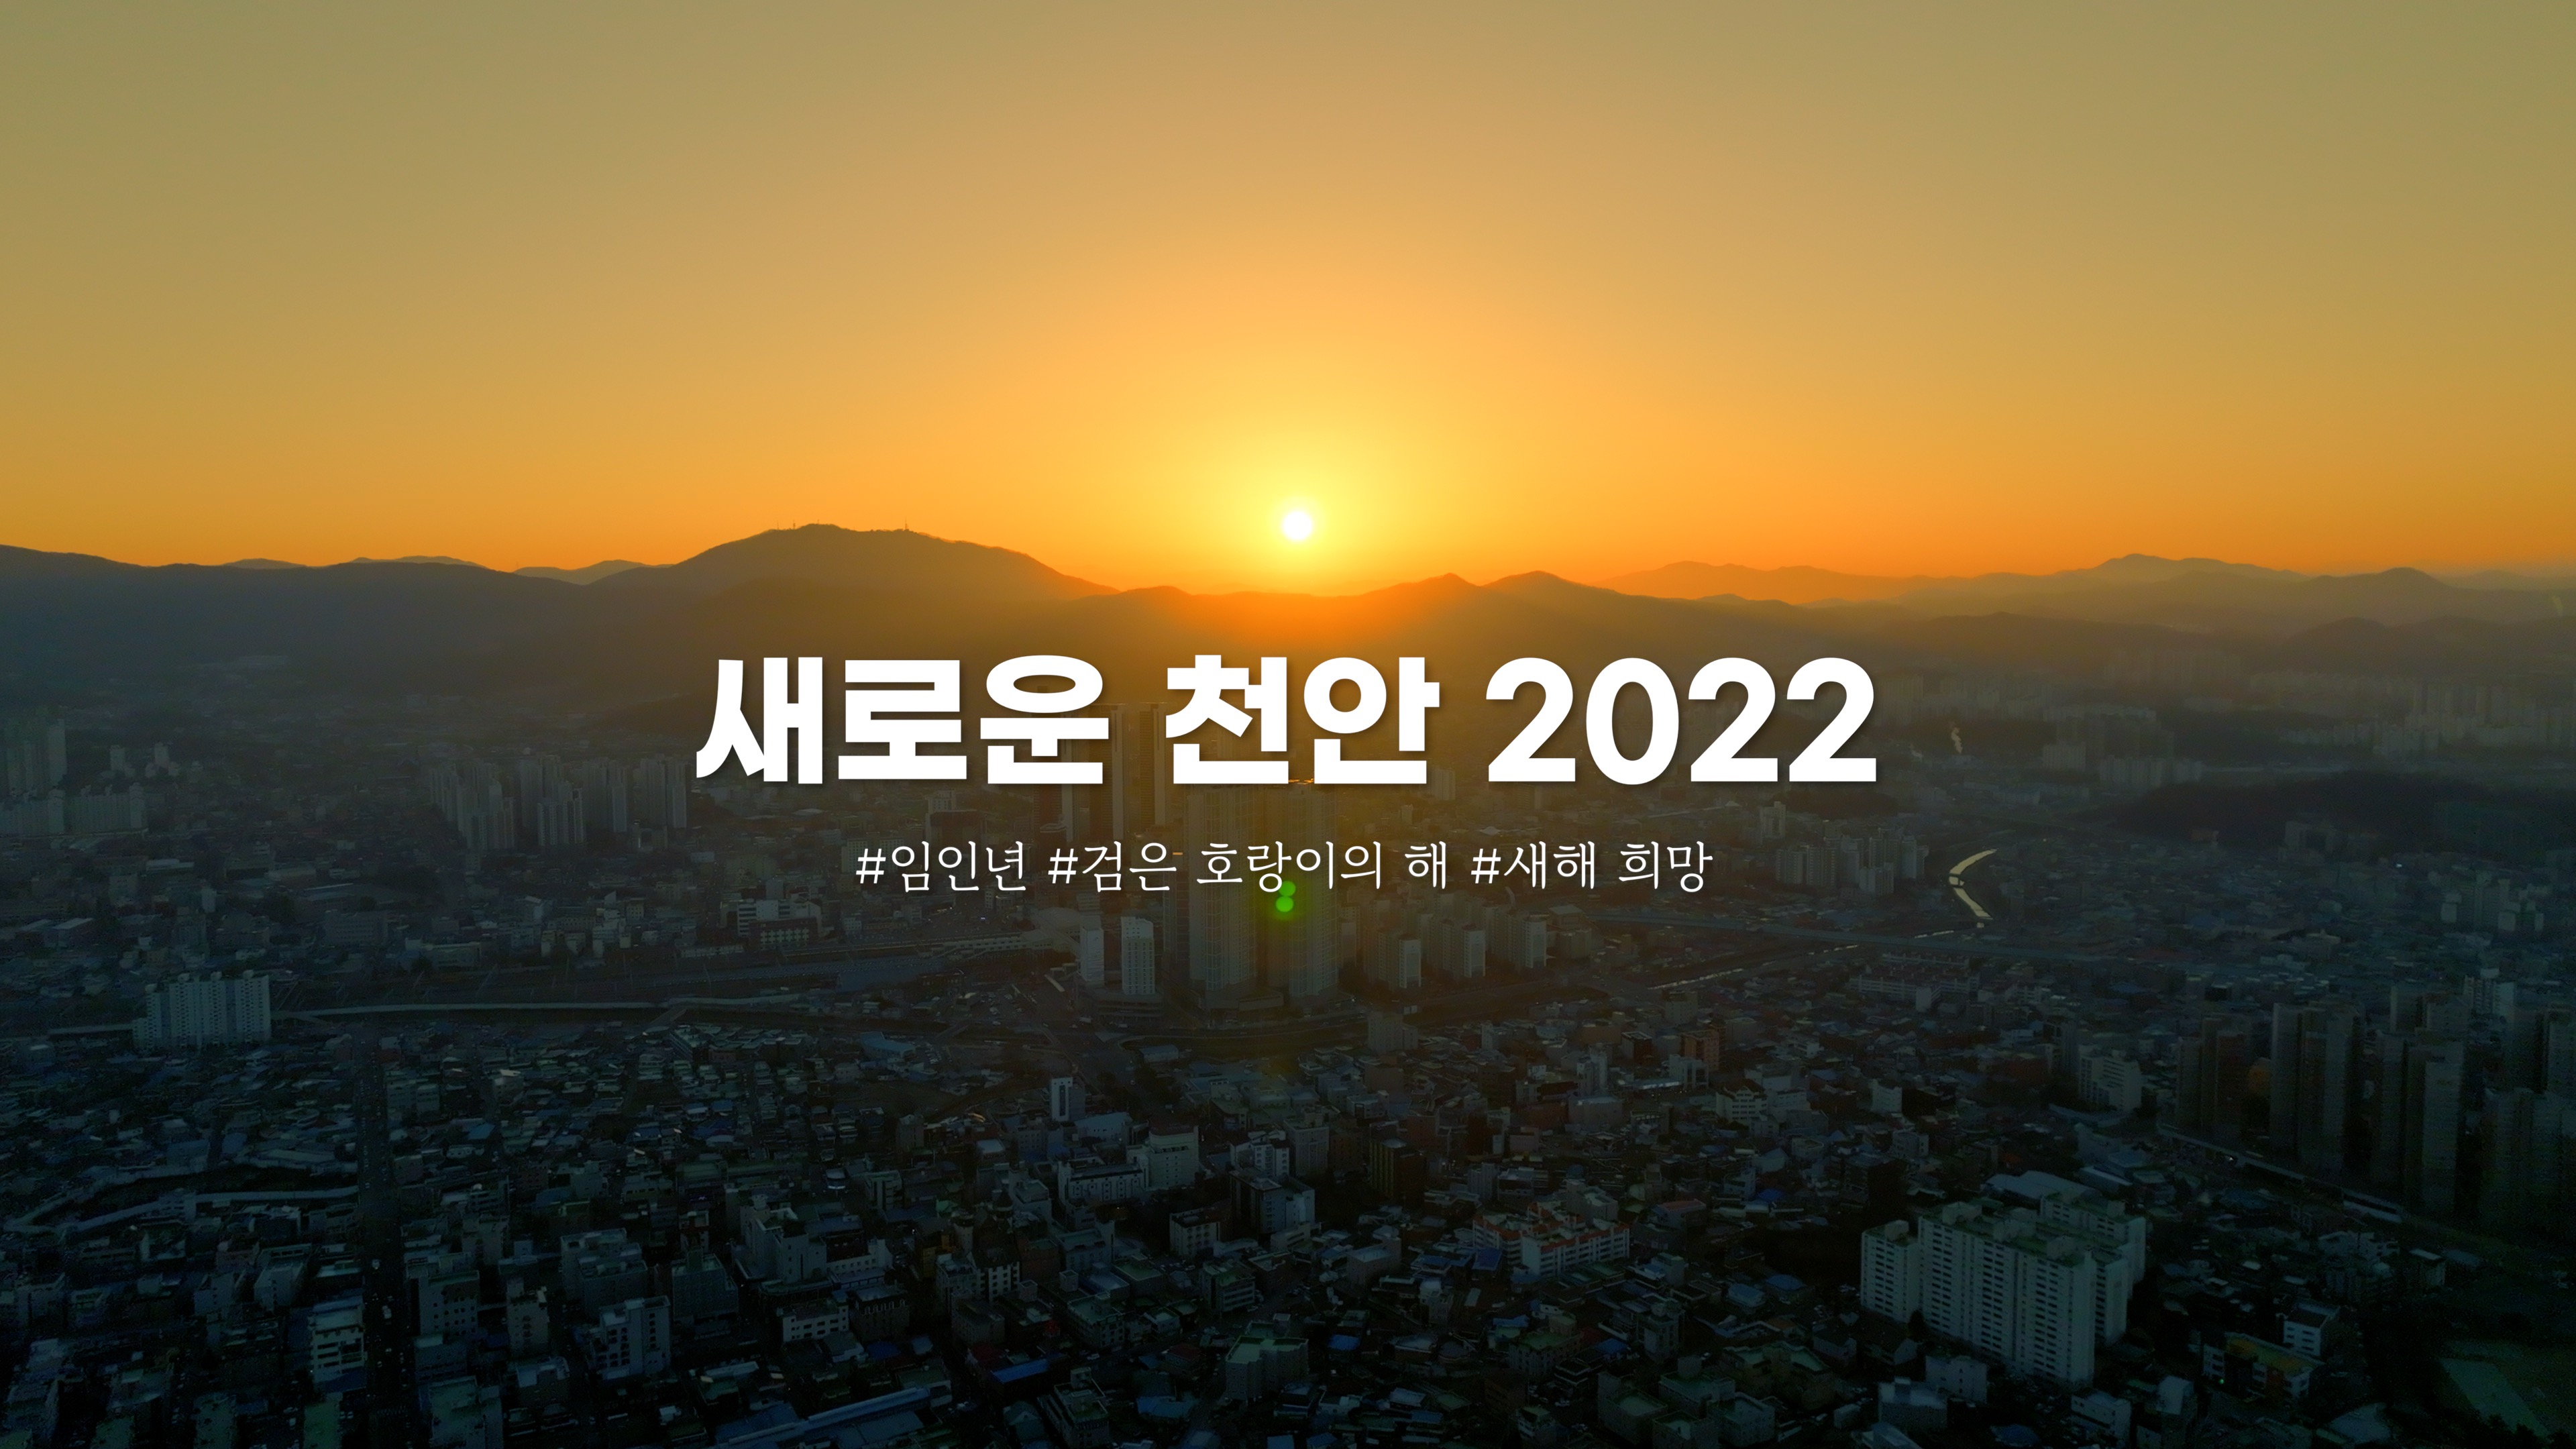 2022 New Cheonan, 우리는 계속 나아갑니다